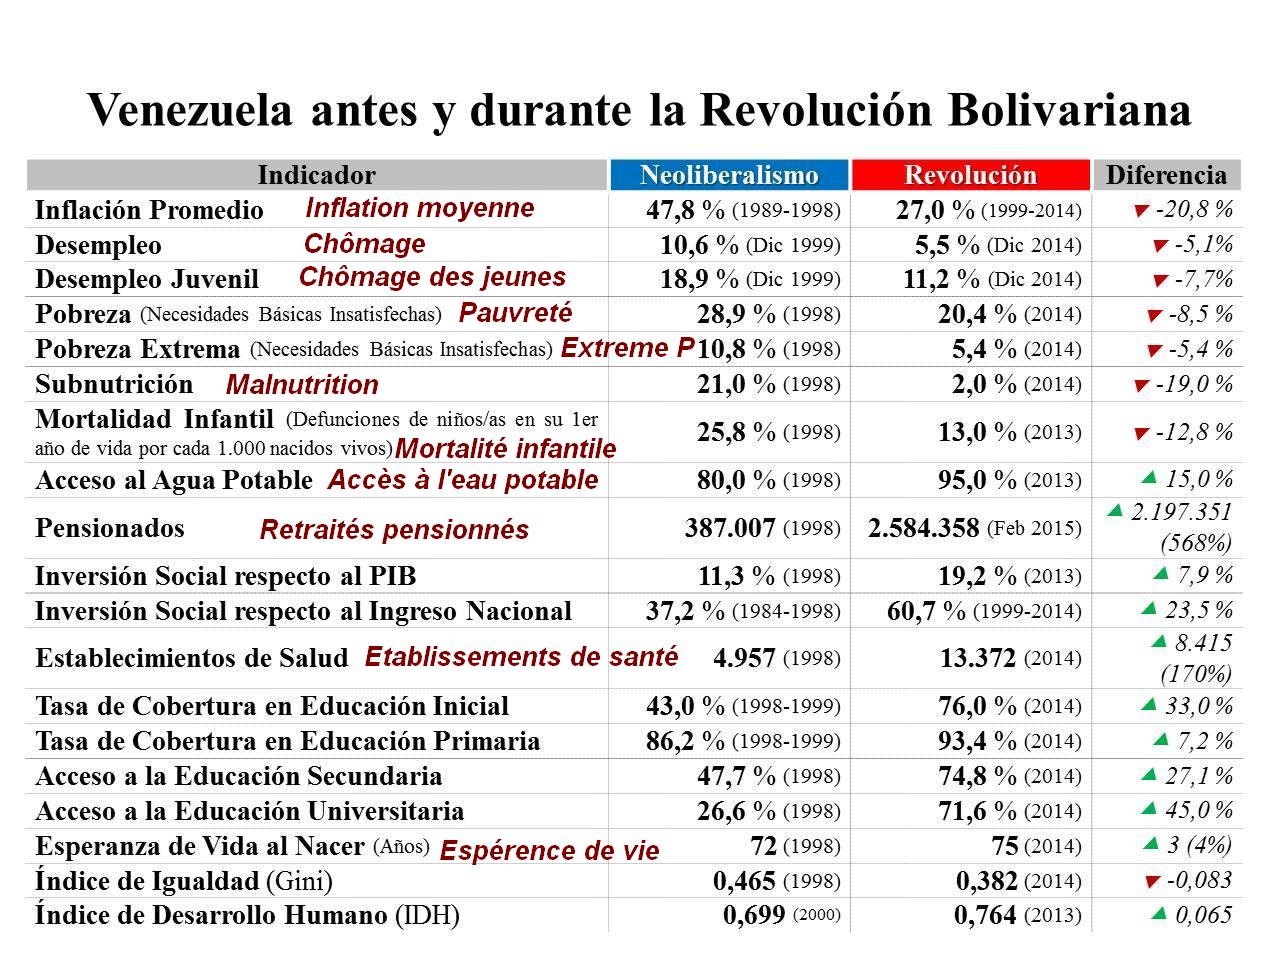 Le Venezuela avant et pendant la Révolution bolivarienne